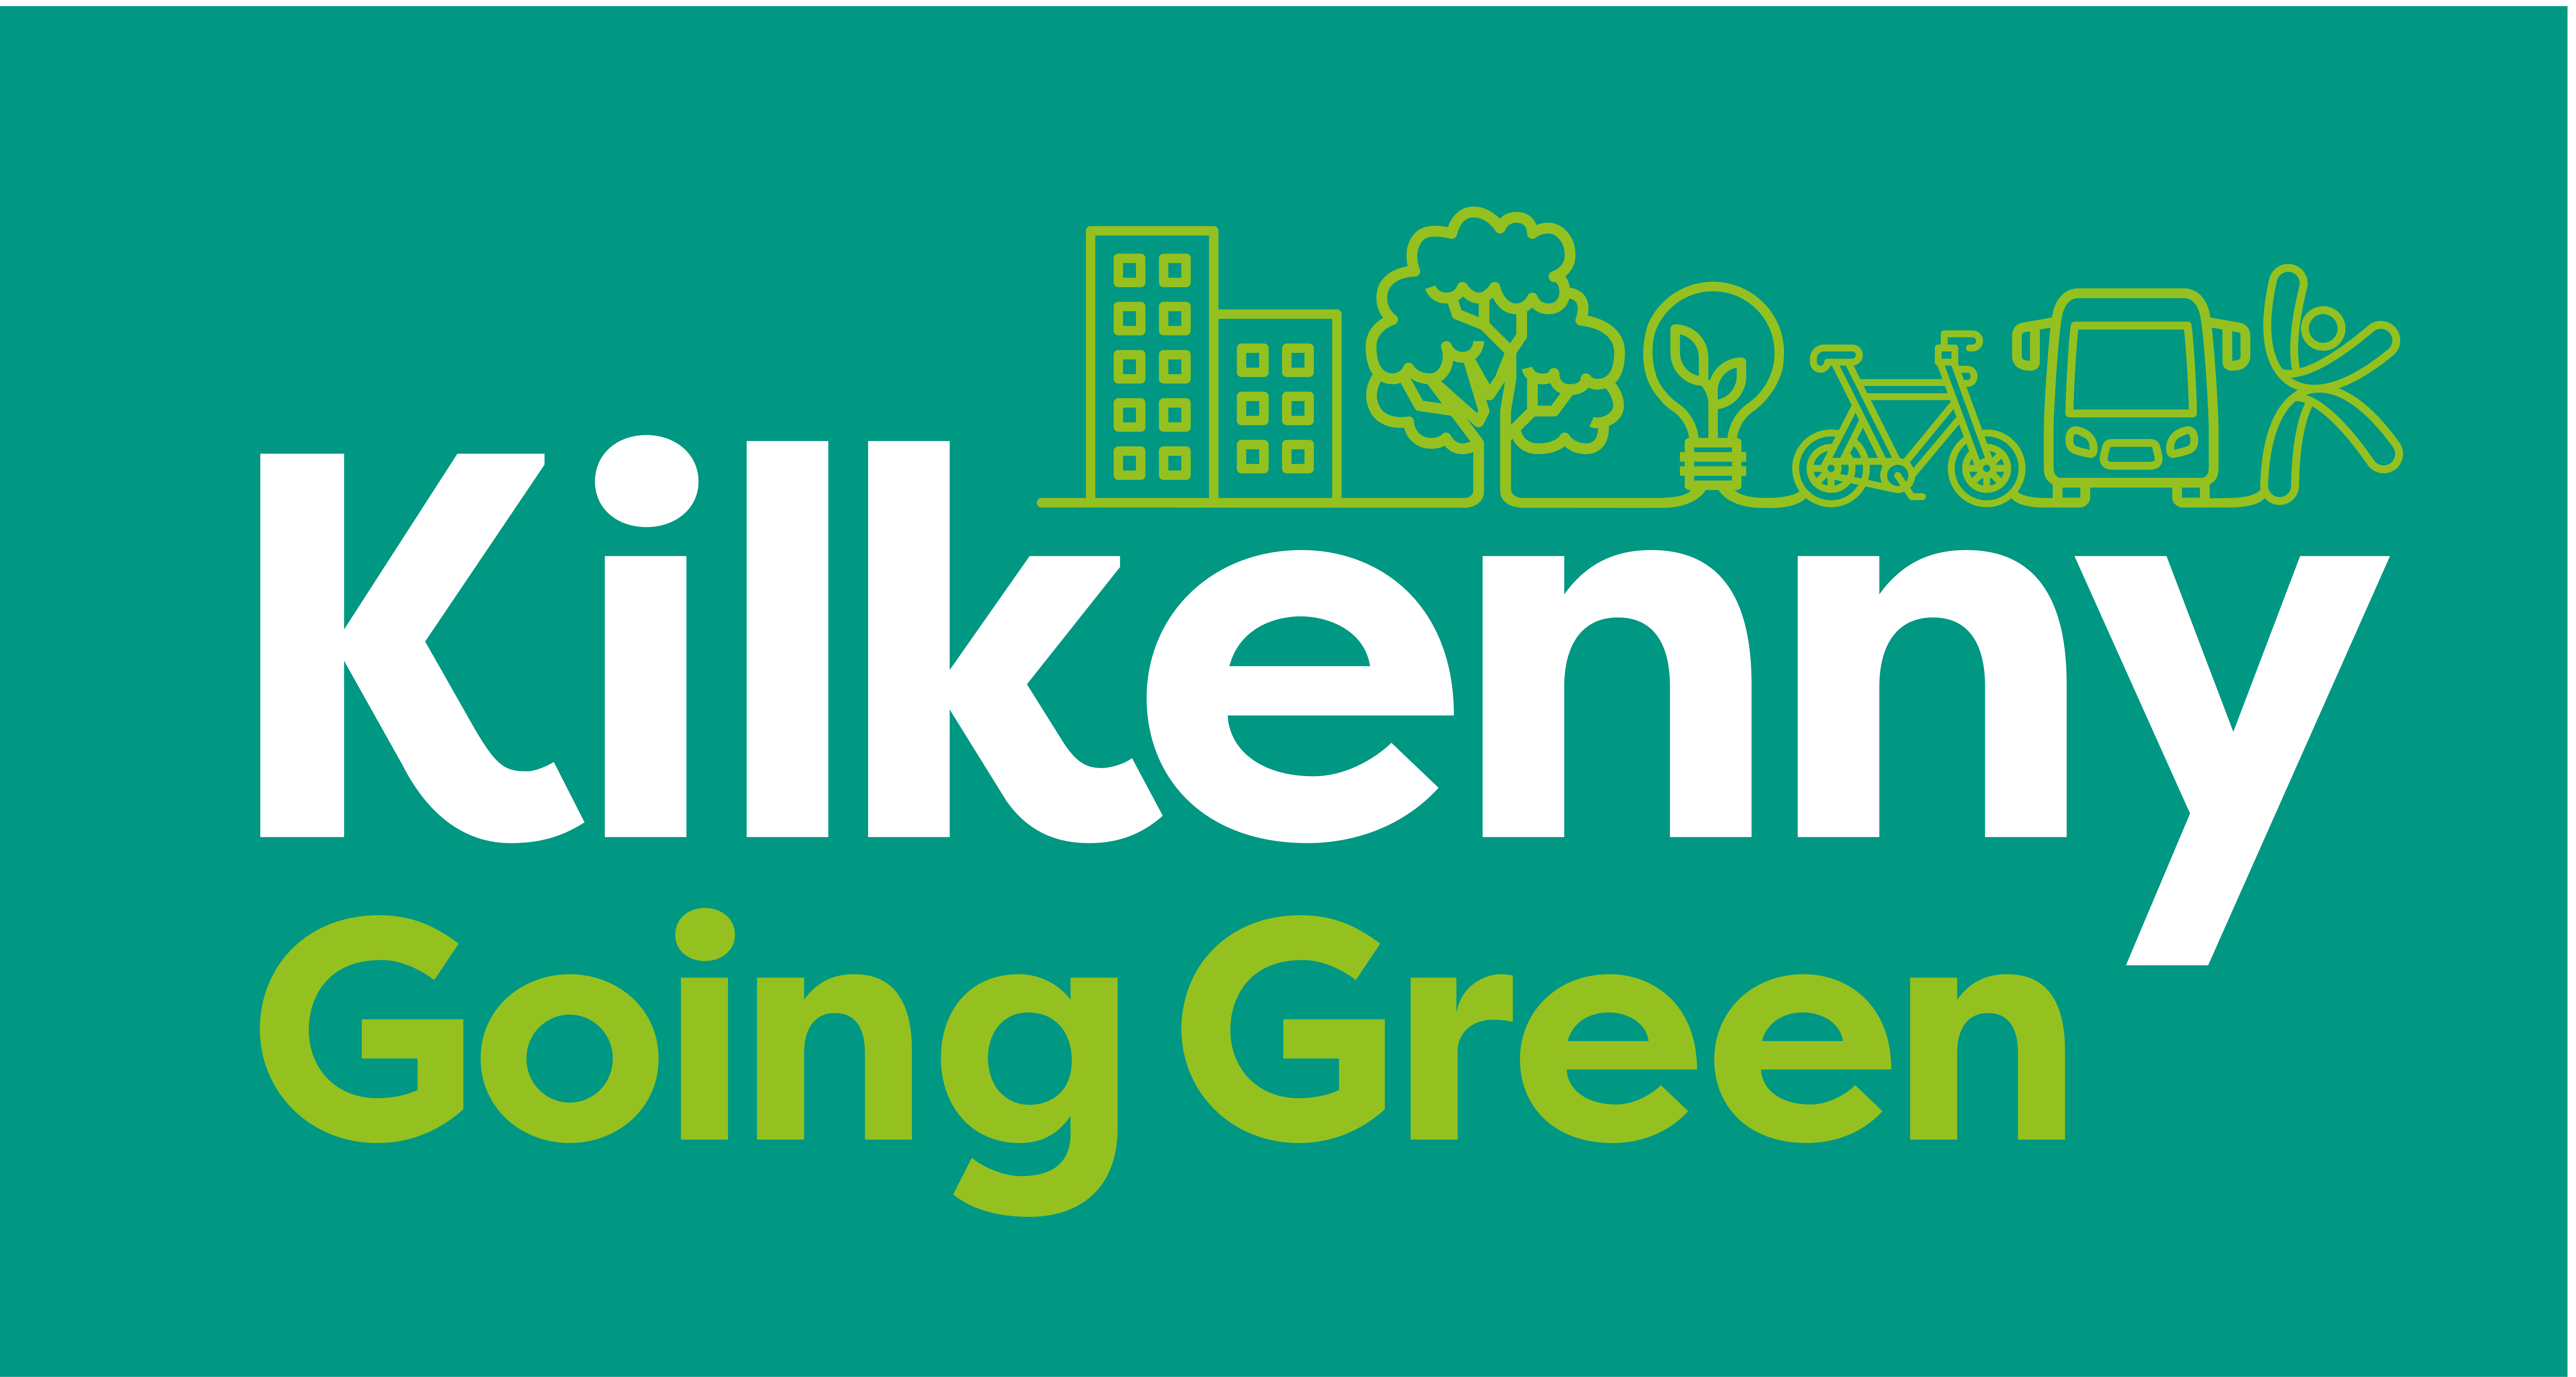 Kilkenny-Going-Green_marca-principală-culoare-inversată